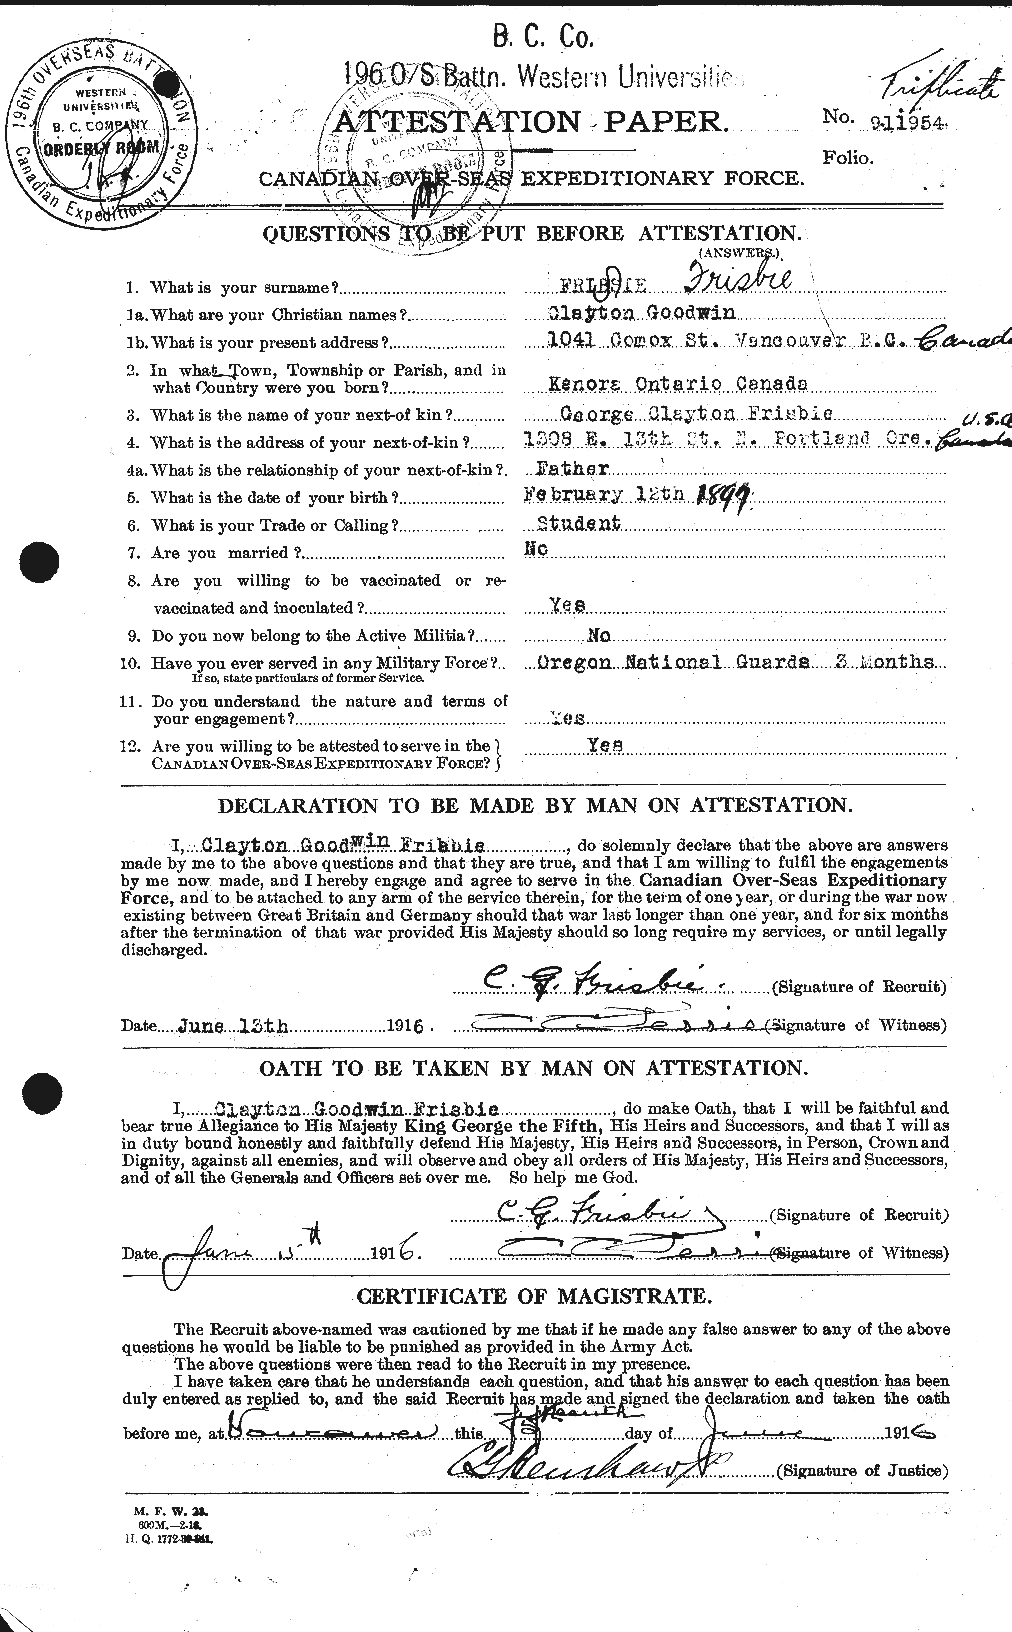 Dossiers du Personnel de la Première Guerre mondiale - CEC 337450a